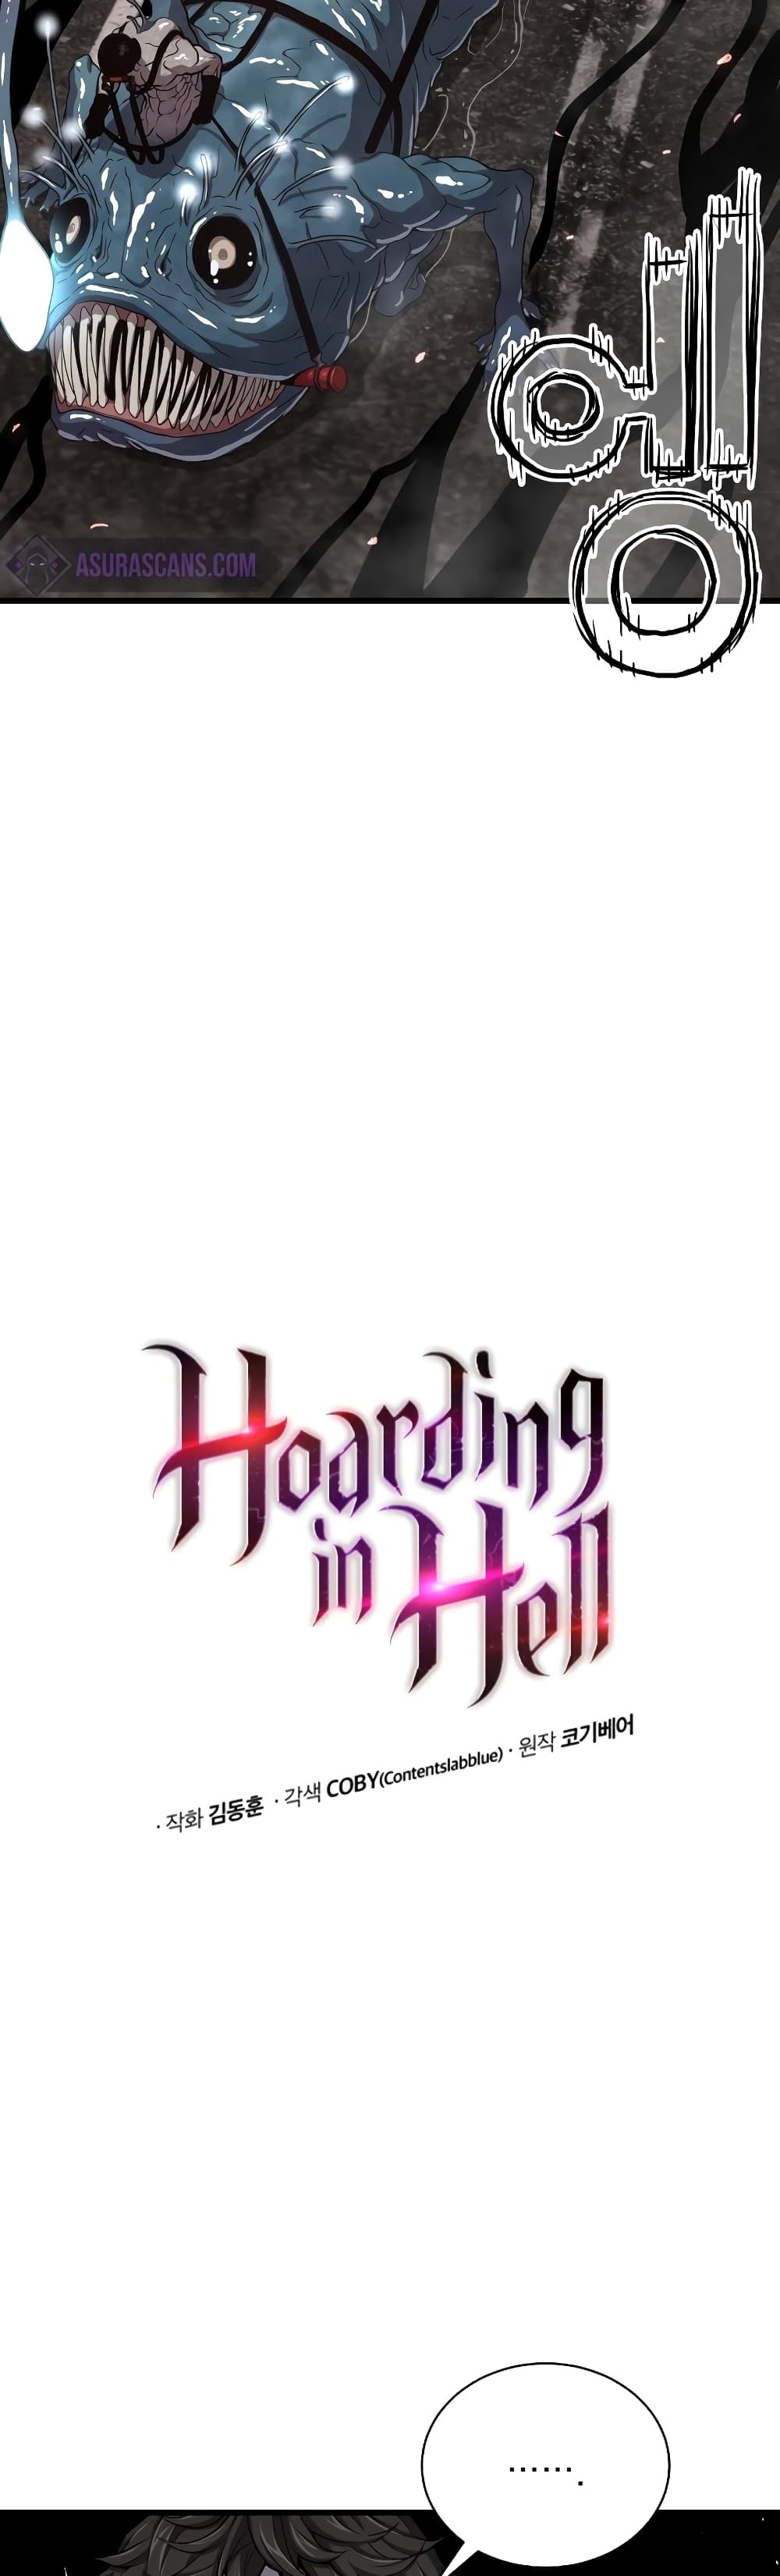 Hoarding in Hell 38-38